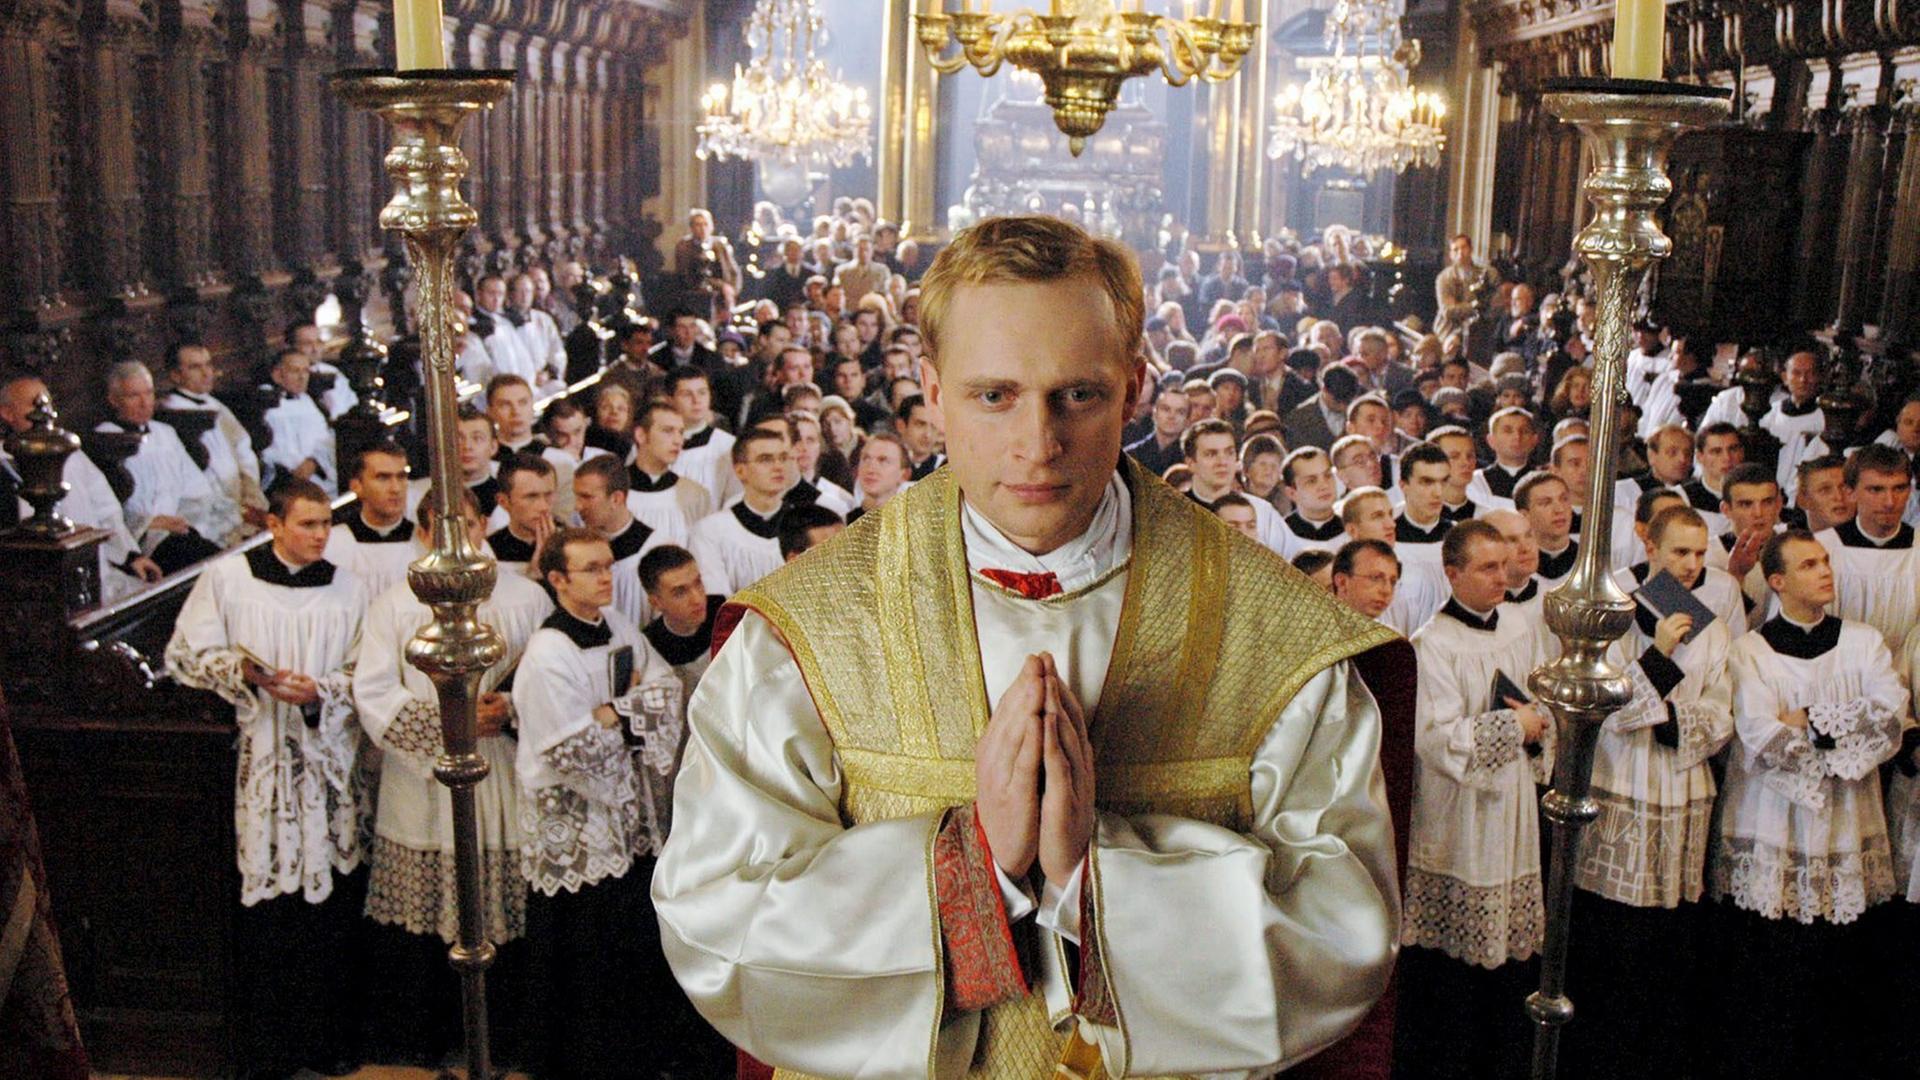  Piotr Adamczyk als Karol Wojtyla steht erhöht mit zum Gebet gefalteten Händen in einer Kirche, hinter ihm schauen viele weitere Männer mit weißen Gewändern in eine Richtung.